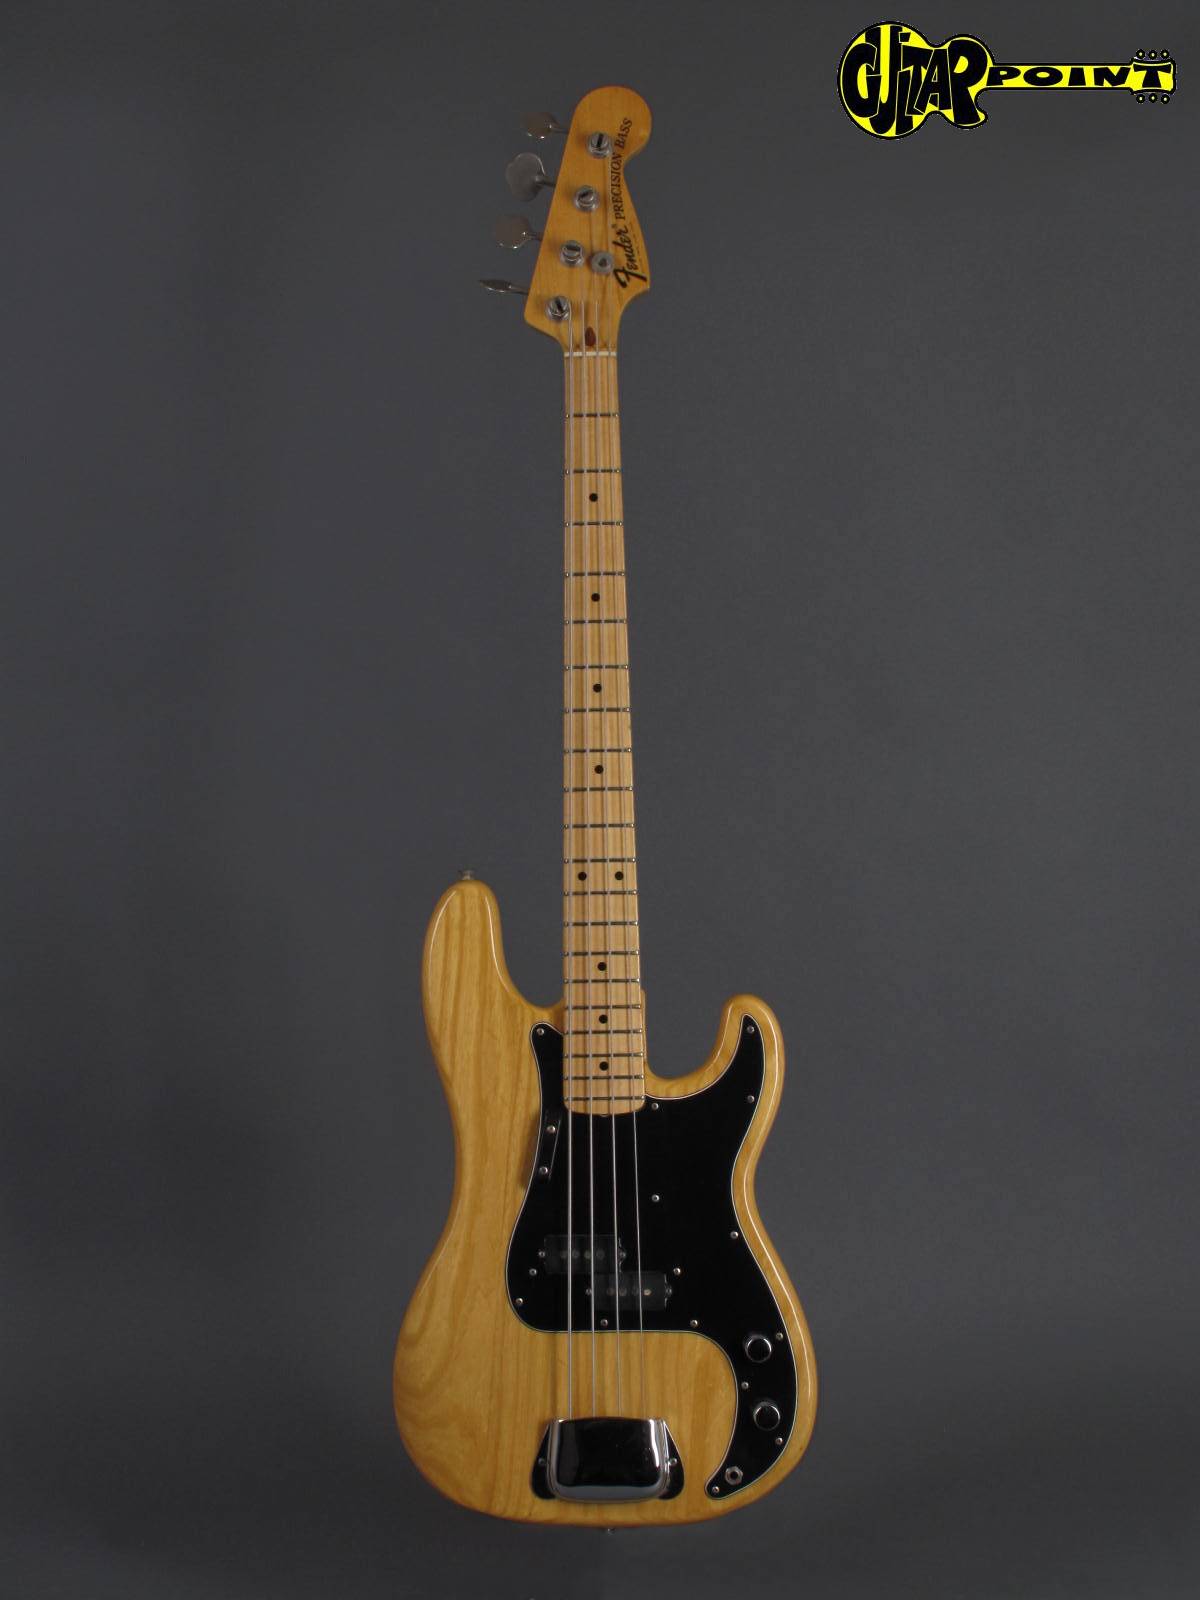 【送料無料SALE】[中古] Fender 1976 Precision Bass 軽量個体のヴィンテージプレベ 1976年製 [MI304] フェンダー